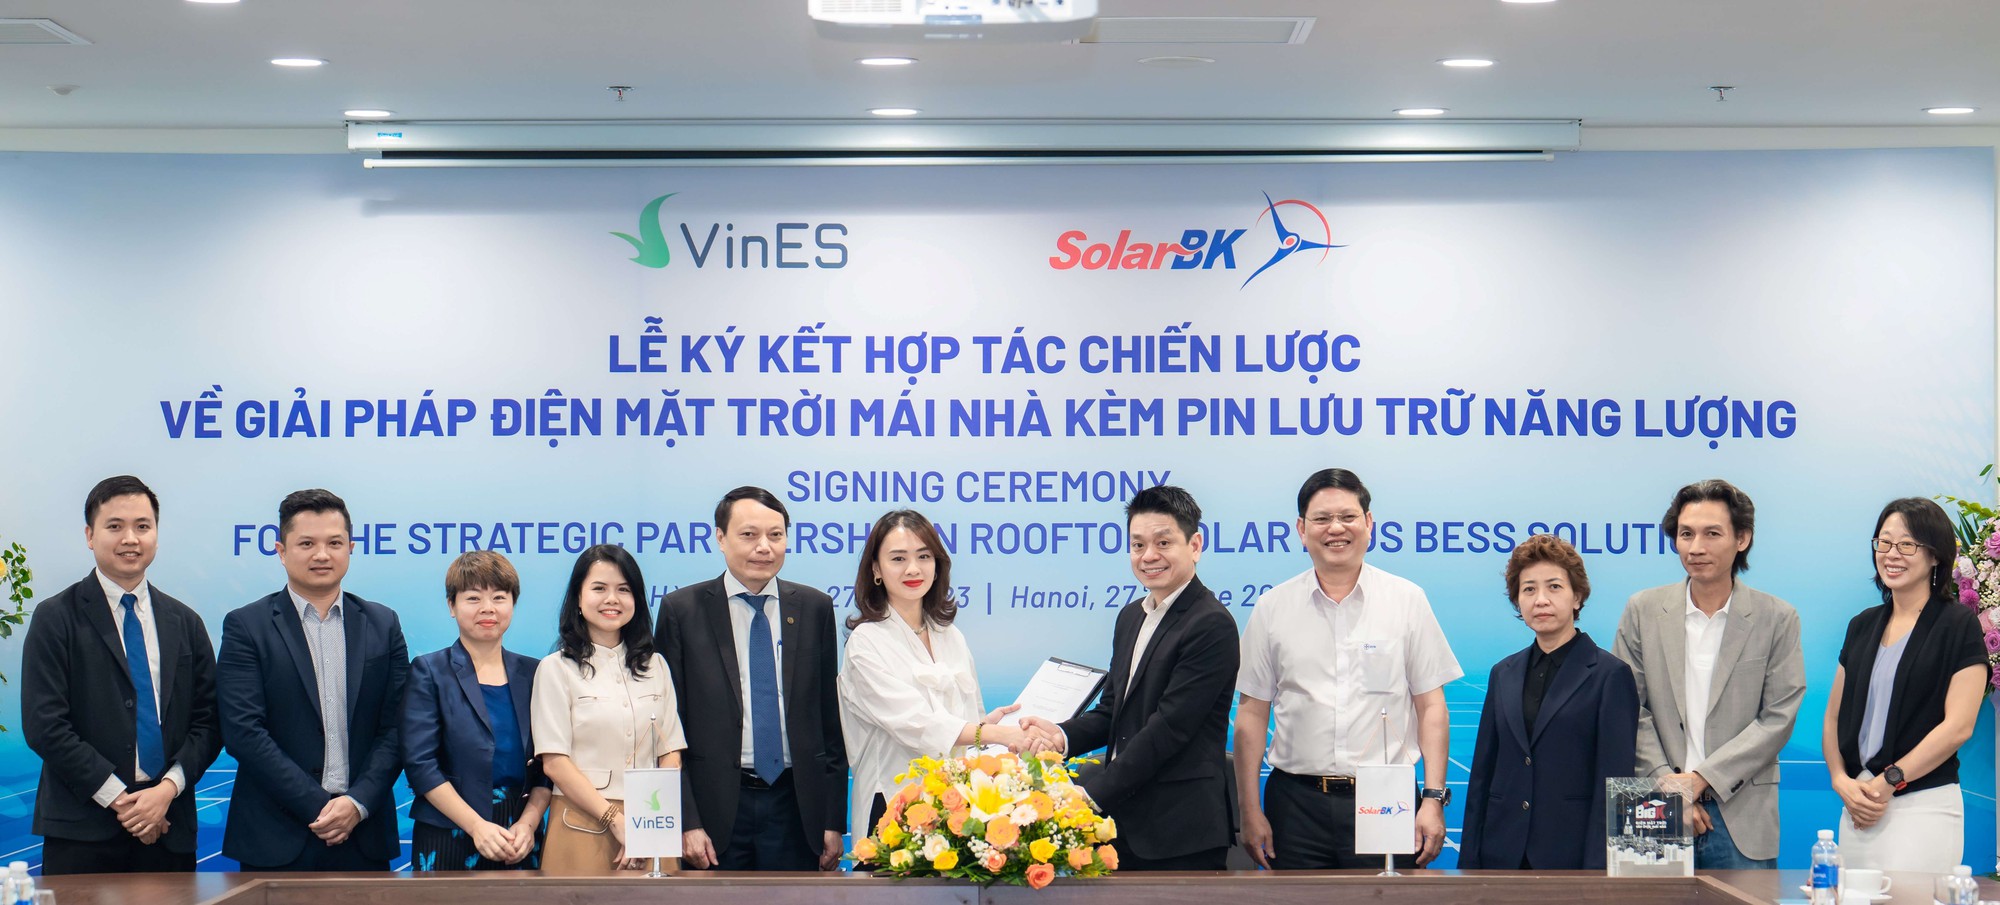 VinES và SolarBK hợp tác thúc đẩy sử dụng giải pháp điện mặt trời mái nhà kèm pin lưu trữ năng lượng tại Việt Nam - Ảnh 1.